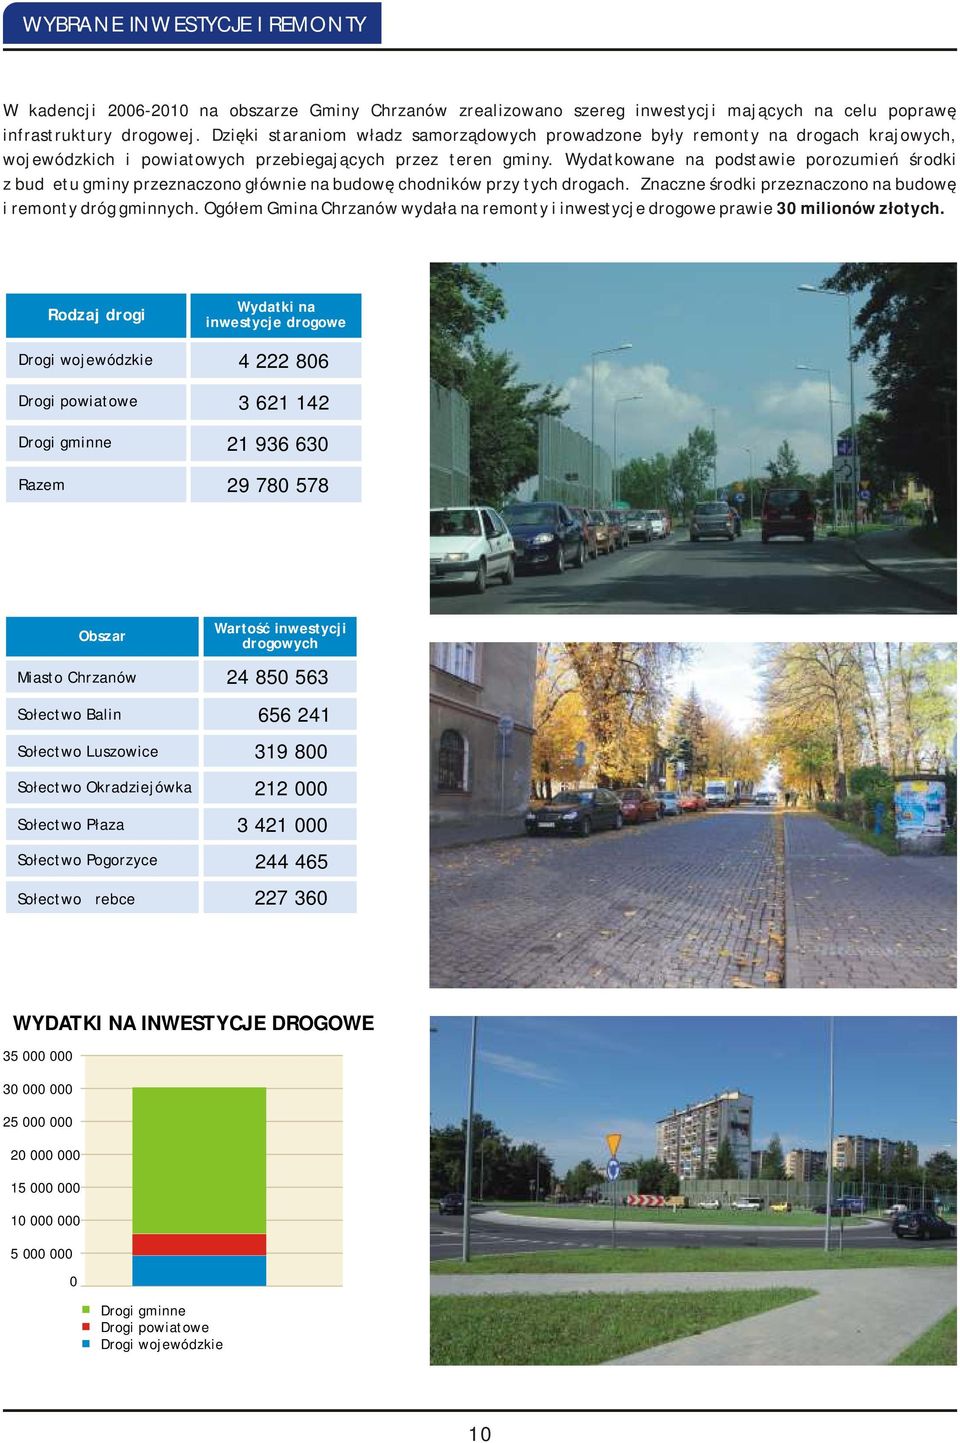 Wydatkowane na podstawie porozumień środki z budżetu gminy przeznaczono głównie na budowę chodników przy tych drogach. Znaczne środki przeznaczono na budowę i remonty dróg gminnych.